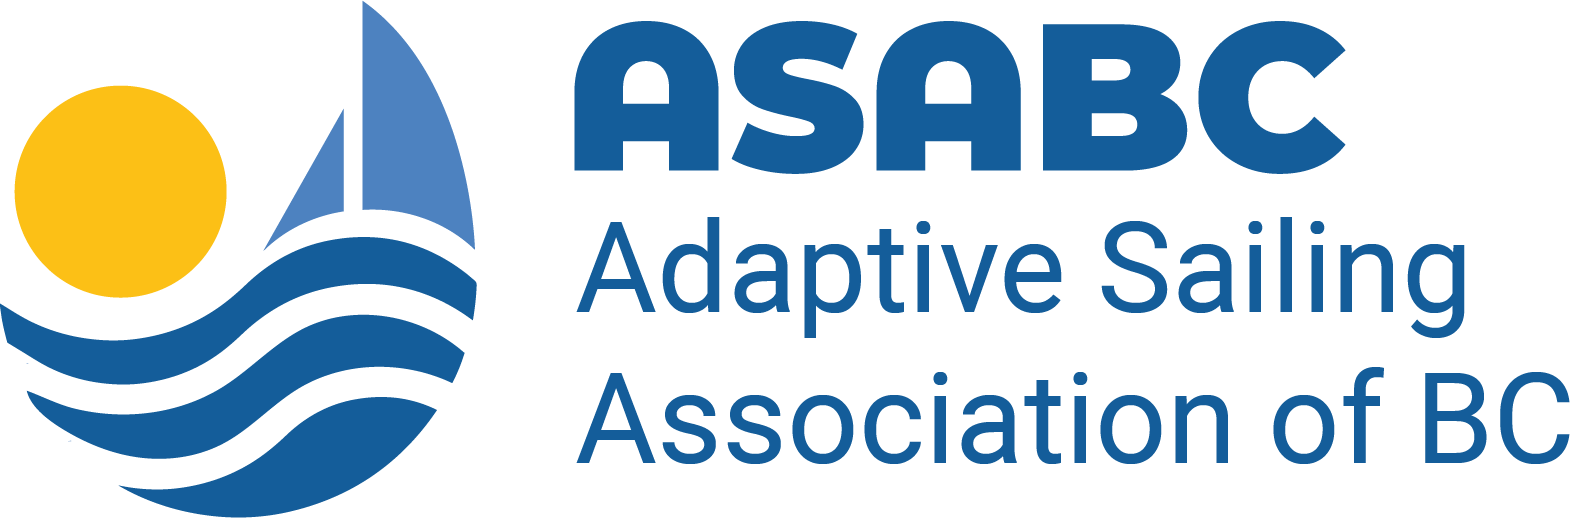 ASABC - Adaptive Sailing Association of BC Logo